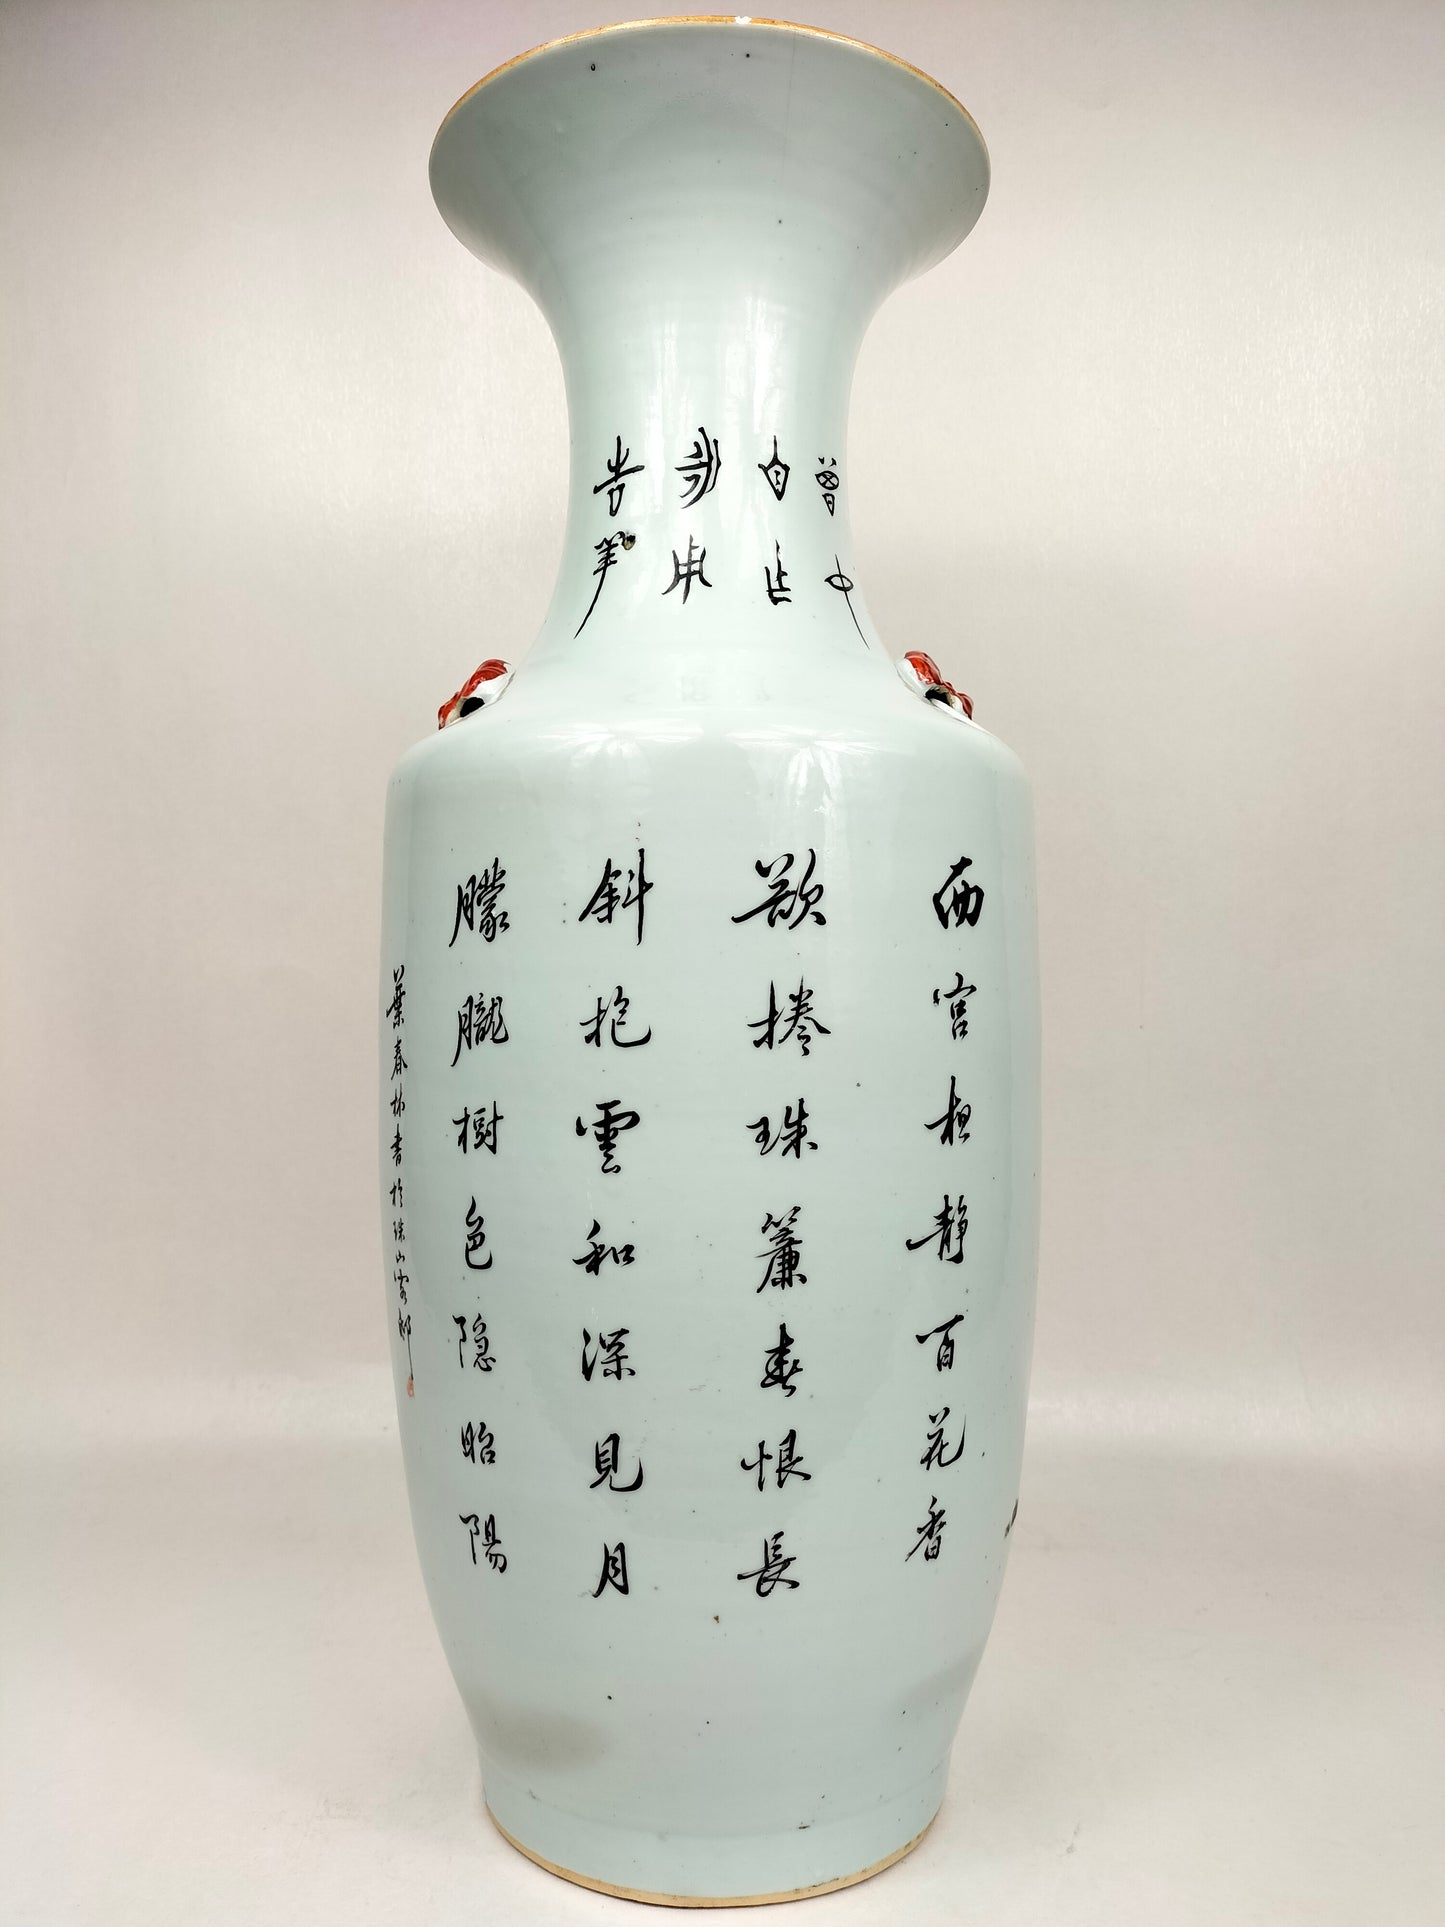 Grande vaso chinês antigo decorado com figuras e búfalos // Período da República (1912-1949)